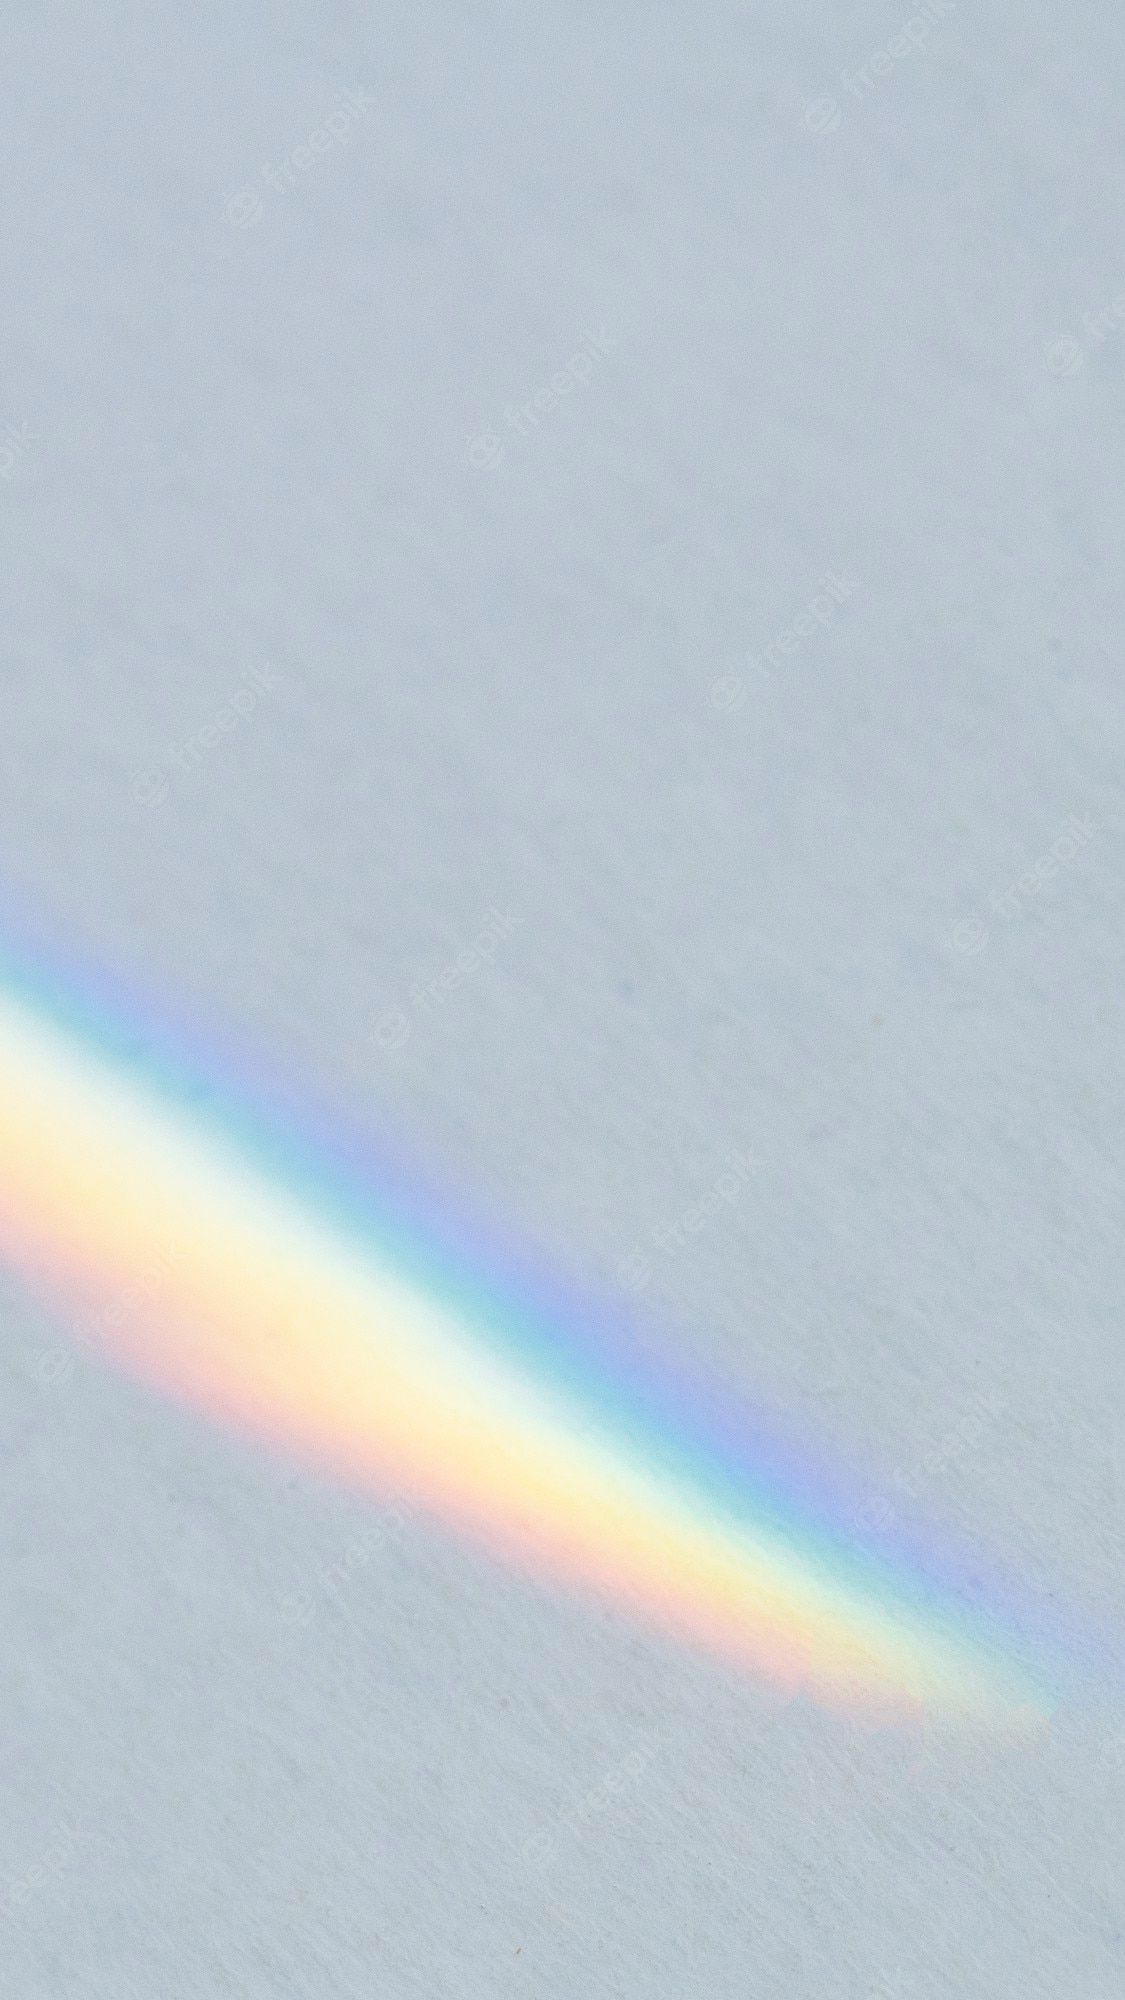 A rainbow, or a rainbow-like arc, appears on the snow. - Rainbows